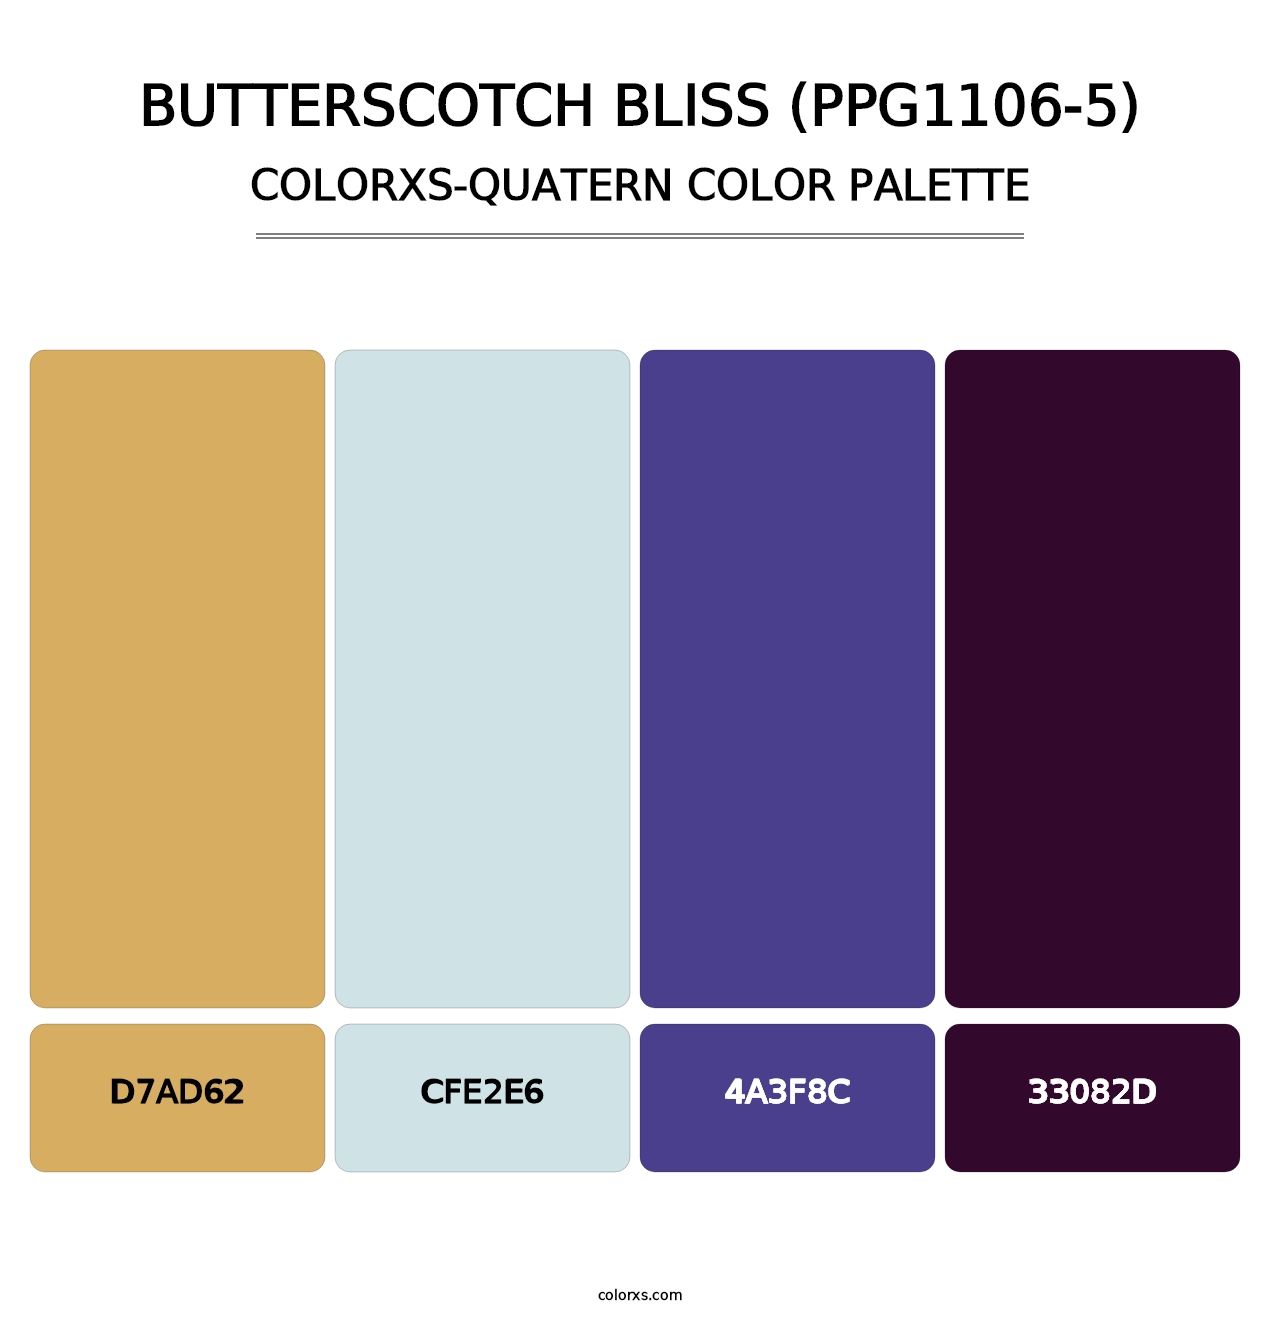 Butterscotch Bliss (PPG1106-5) - Colorxs Quatern Palette